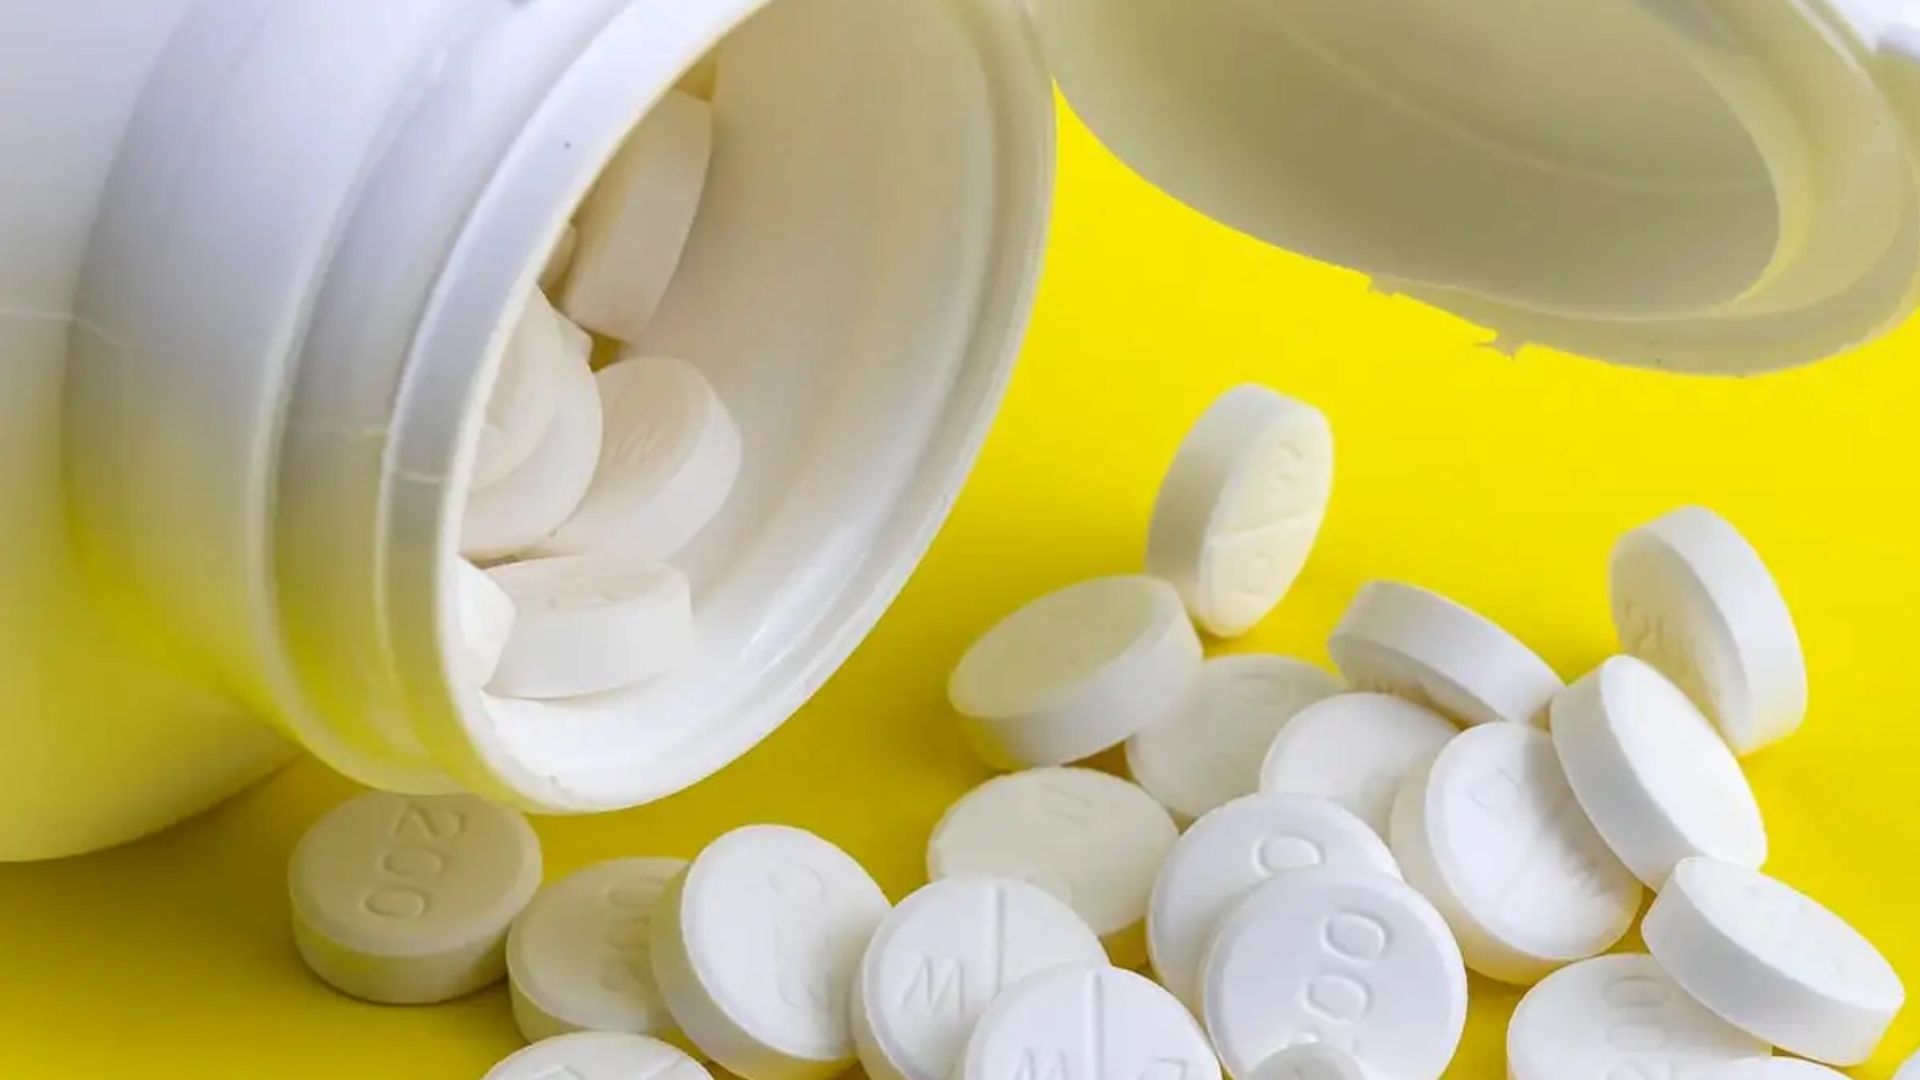 दर्दनिवारक दवा ‘मेफटॉल’ के प्रतिकूल प्रभावों पर आईपीसी ने जारी किया अलर्ट 